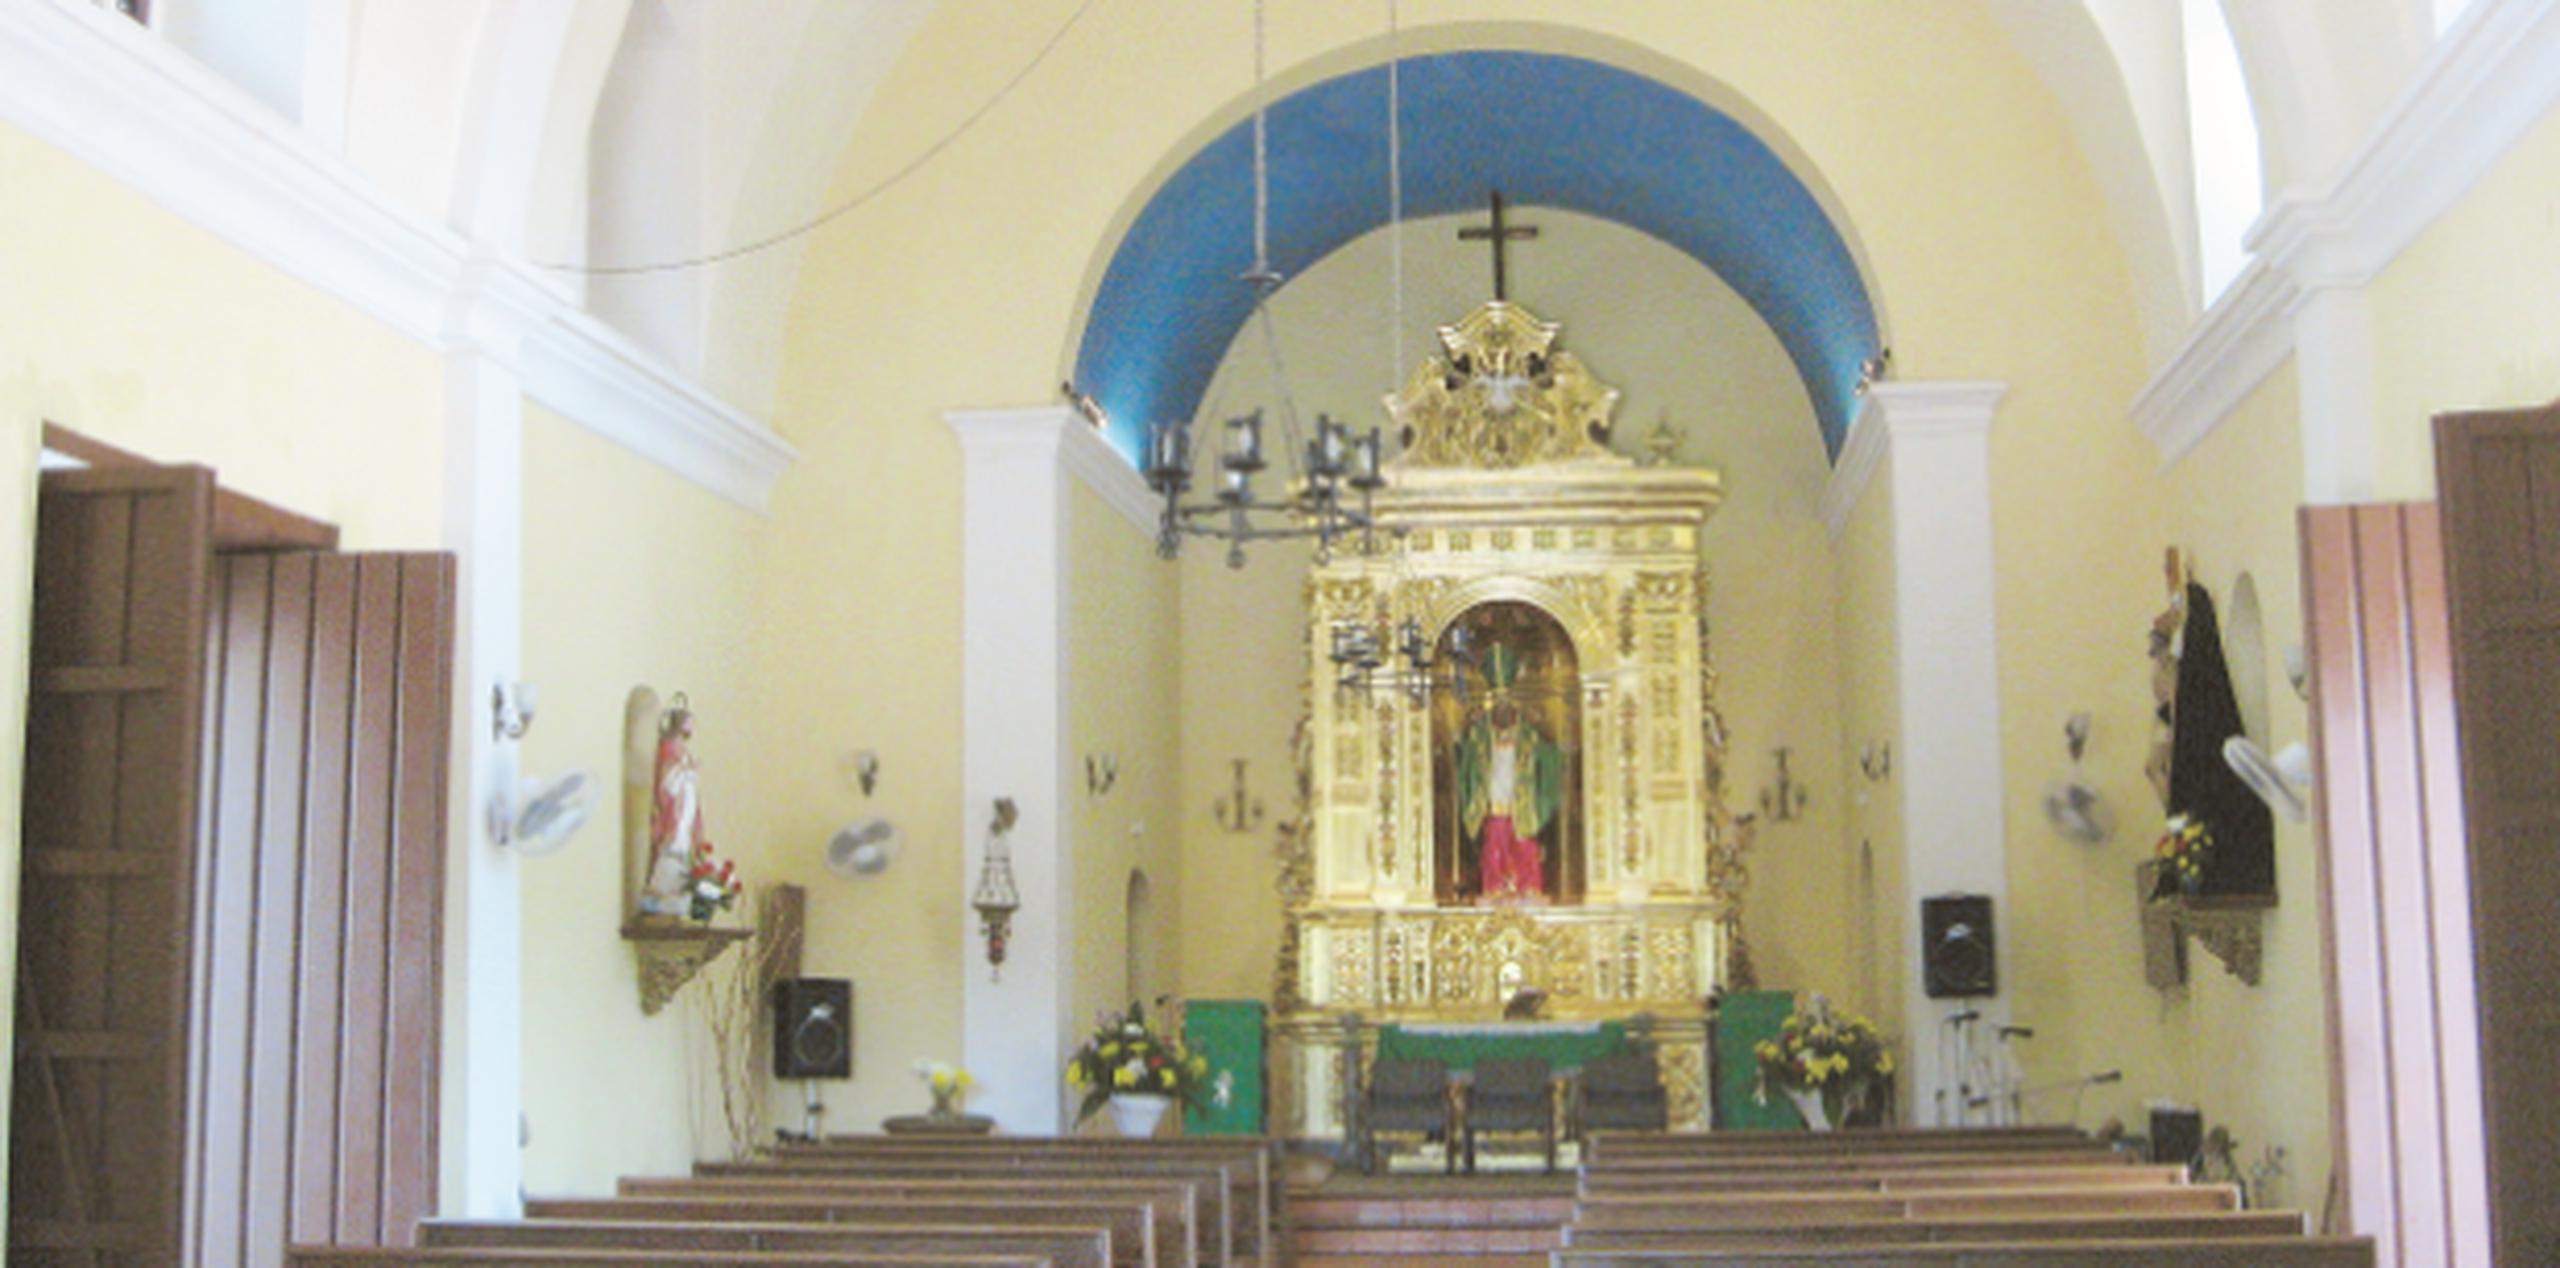 La Iglesia San Patricio y Espíritu Santo es considerada la única “iglesia fortificada” de Puerto Rico, ya que se construyó con muros macizos para protegerla de ataques. (SUMINISTRADAS)